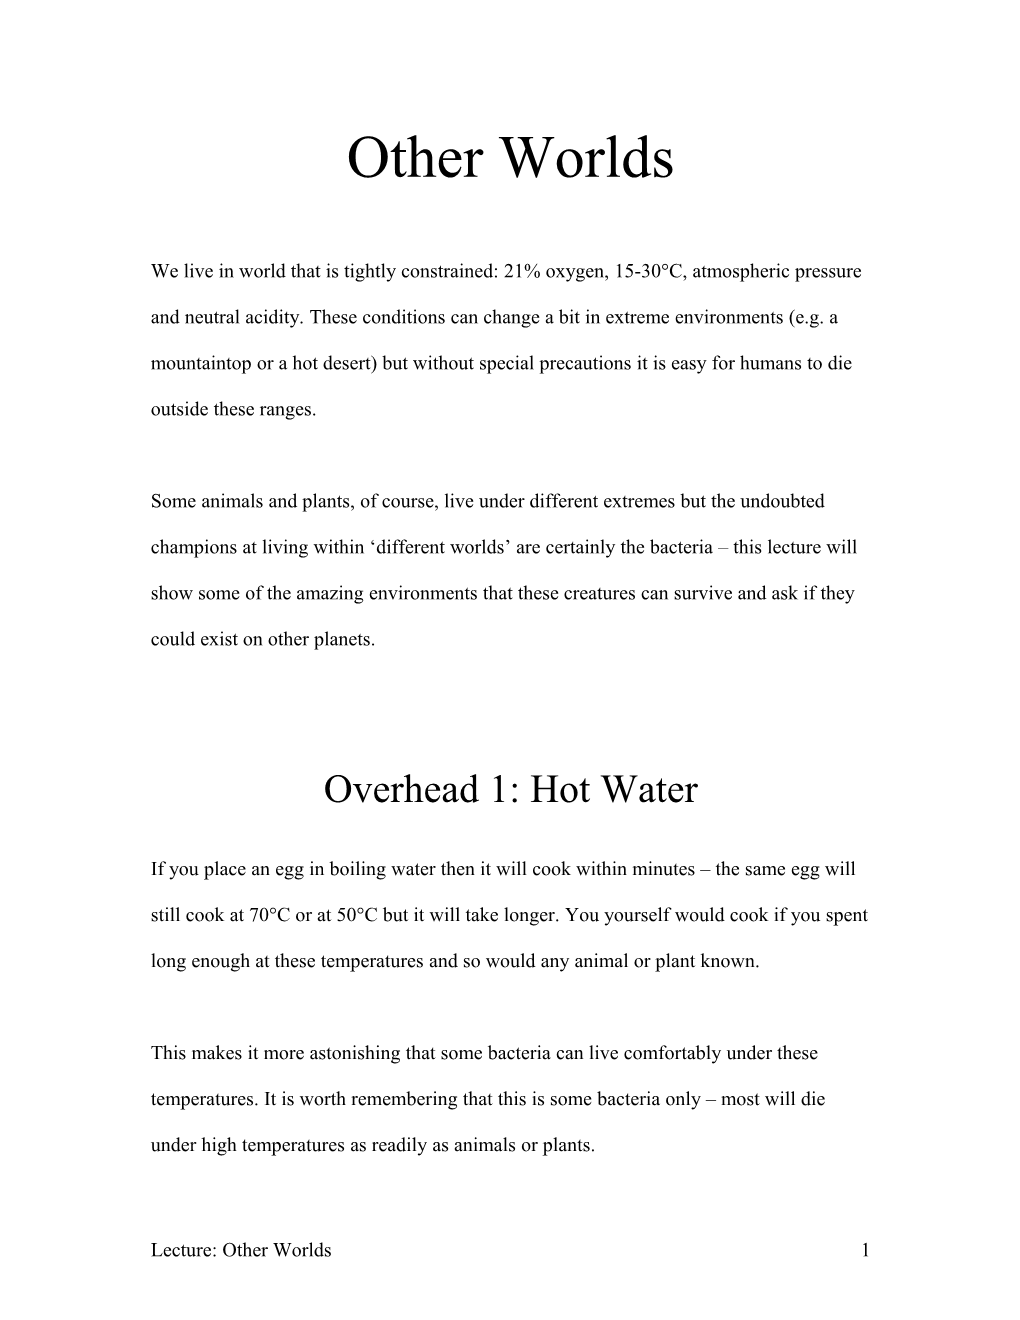 Overhead 1: Hot Water